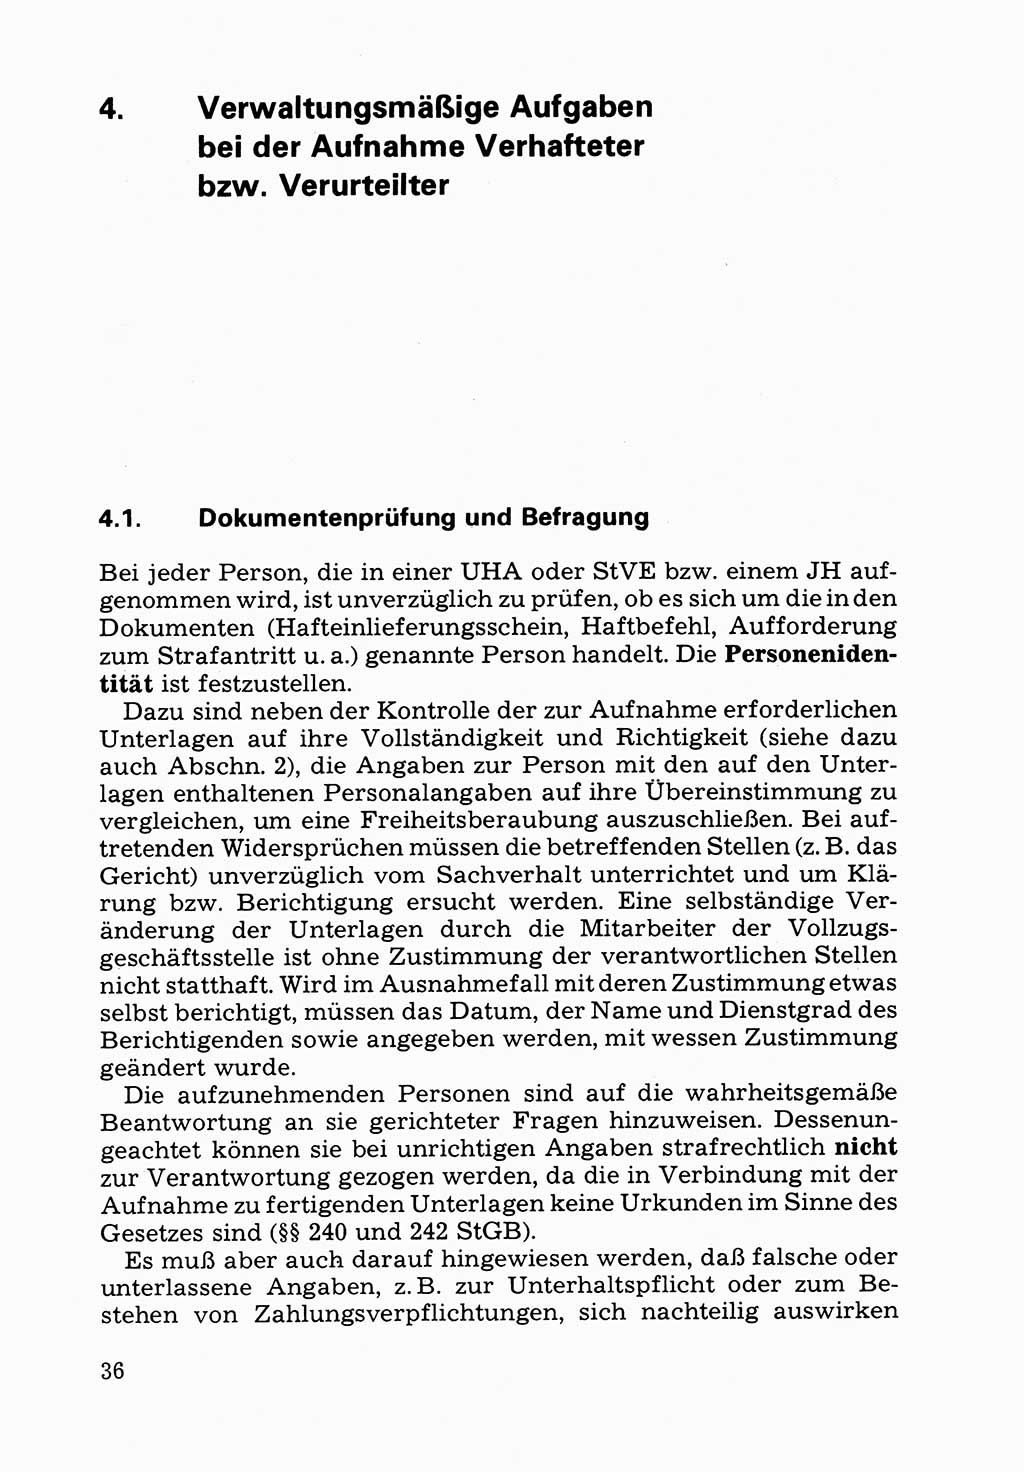 Verwaltungsmäßige Aufgaben beim Vollzug der Untersuchungshaft (U-Haft) sowie der Strafen mit Freiheitsentzug (SV) [Deutsche Demokratische Republik (DDR)] 1980, Seite 36 (Aufg. Vollz. U-Haft SV DDR 1980, S. 36)